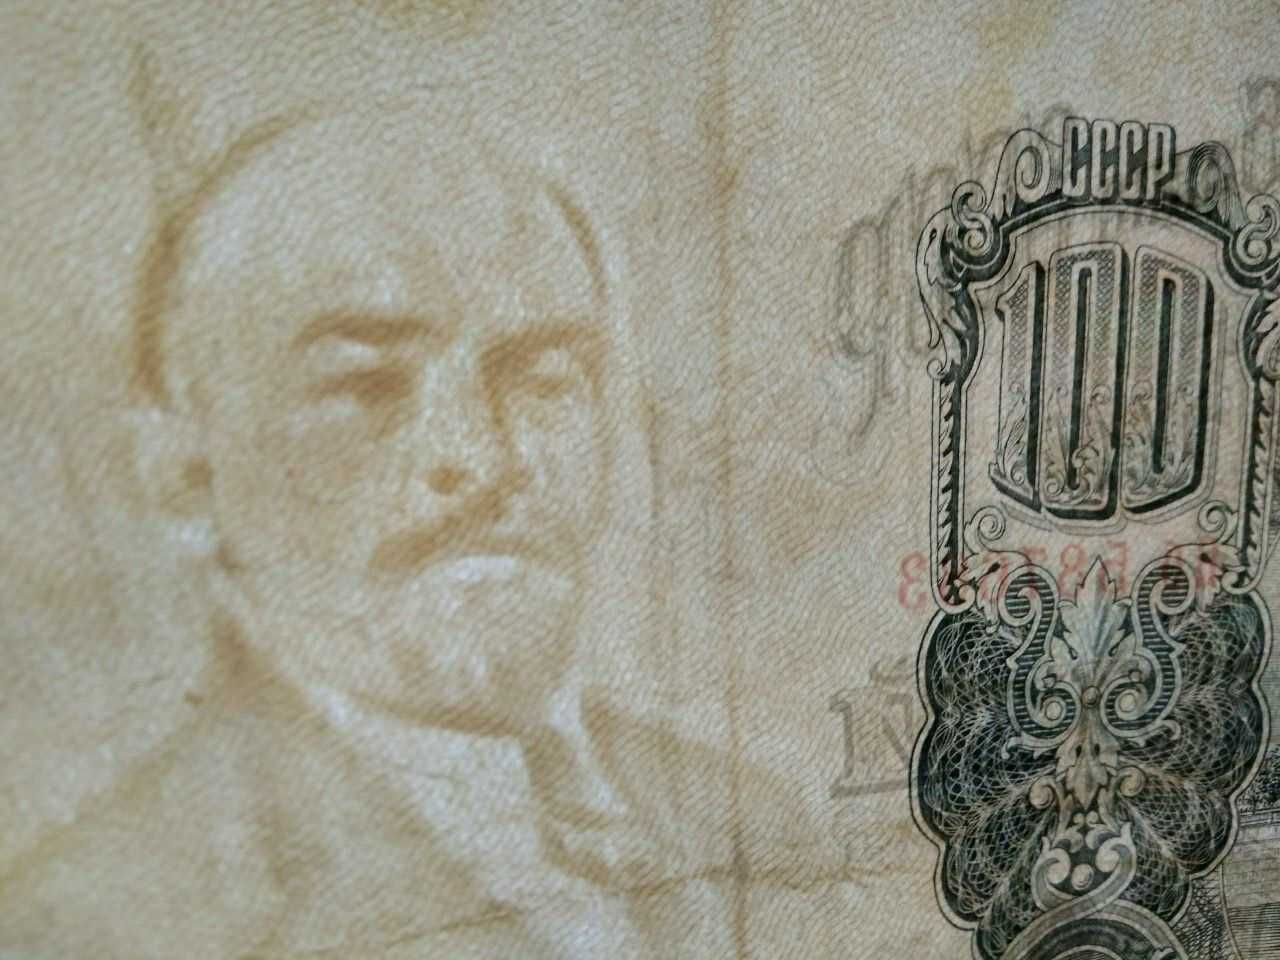 банкнота 100 рублей образца 1947 года